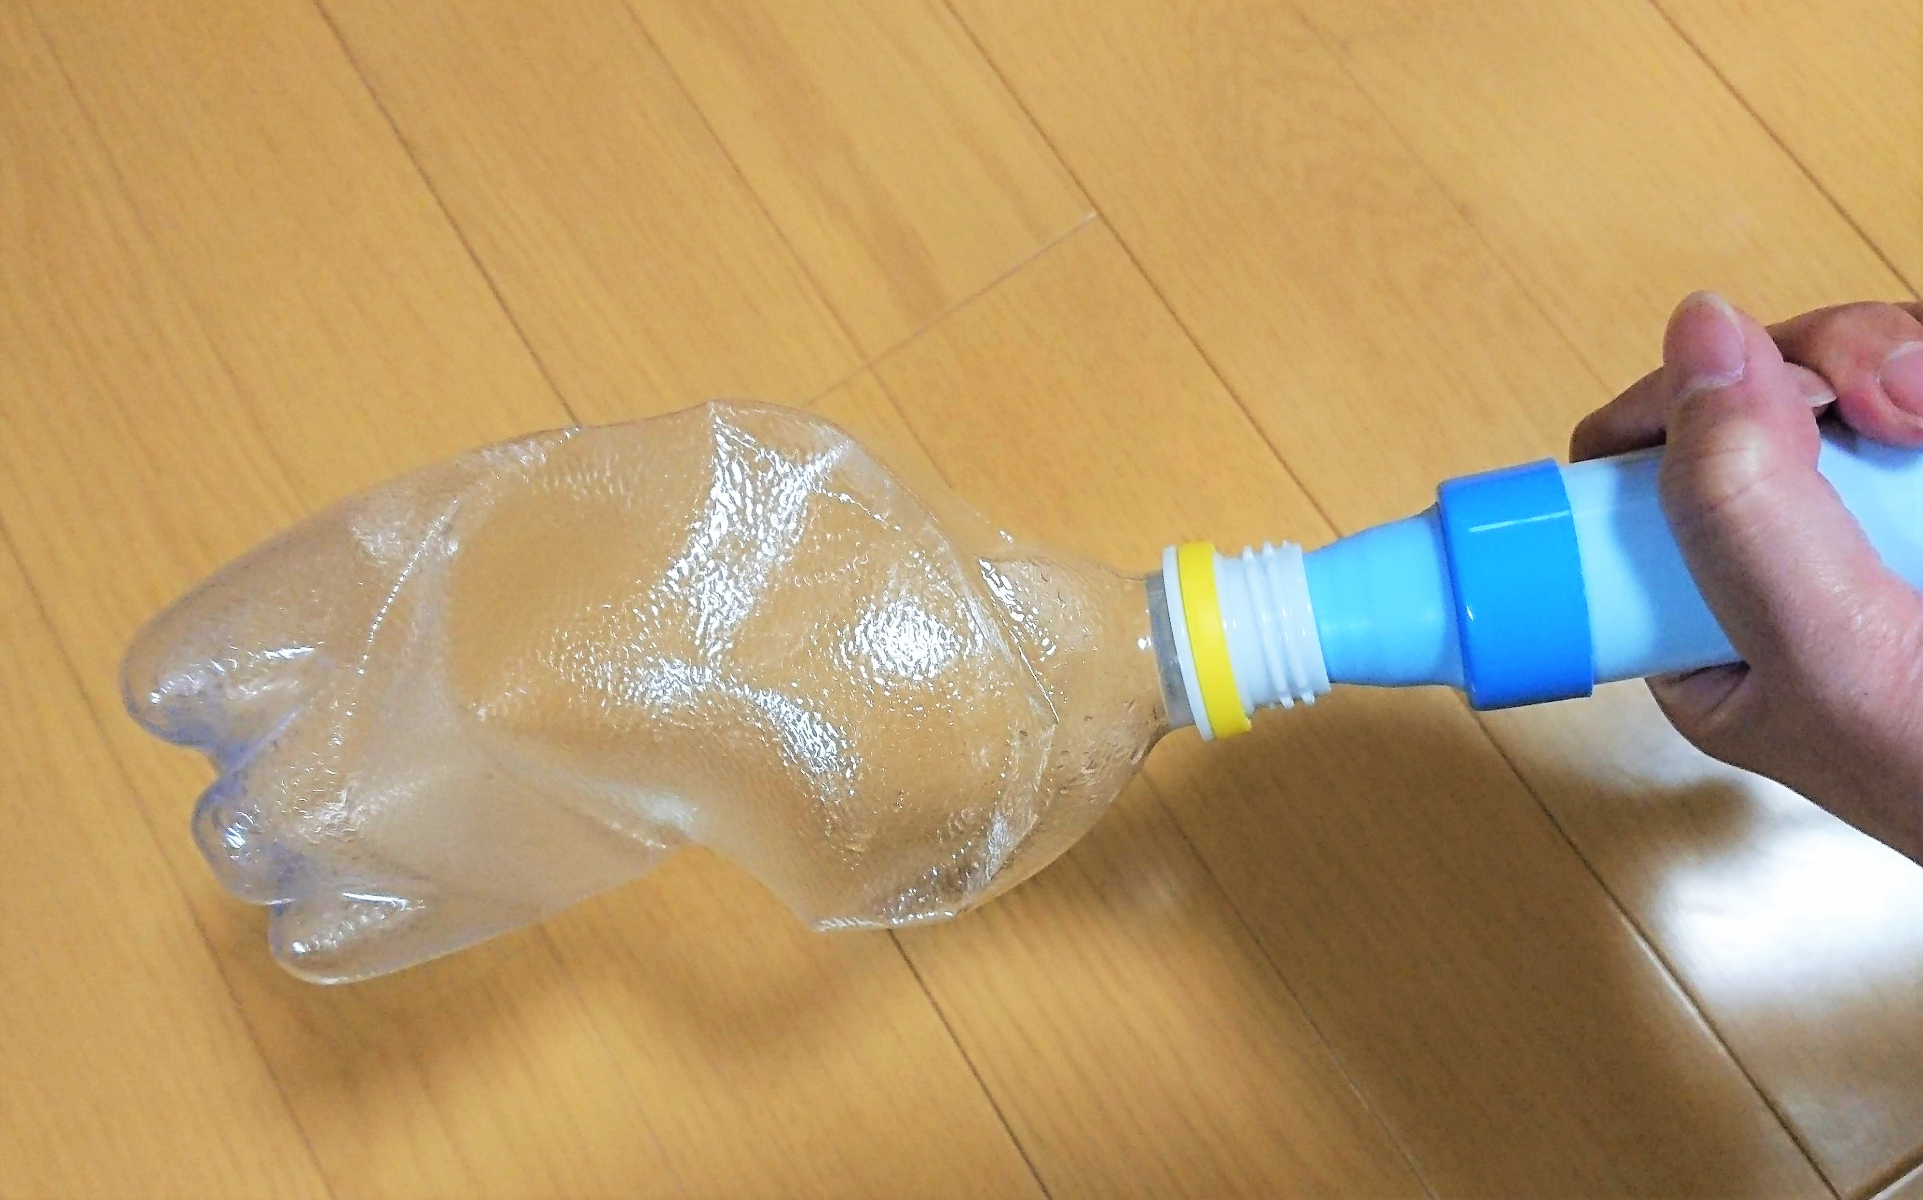 ダイソー ペットボトルをらくらく圧縮できるという謎のグッズを試してみた結果